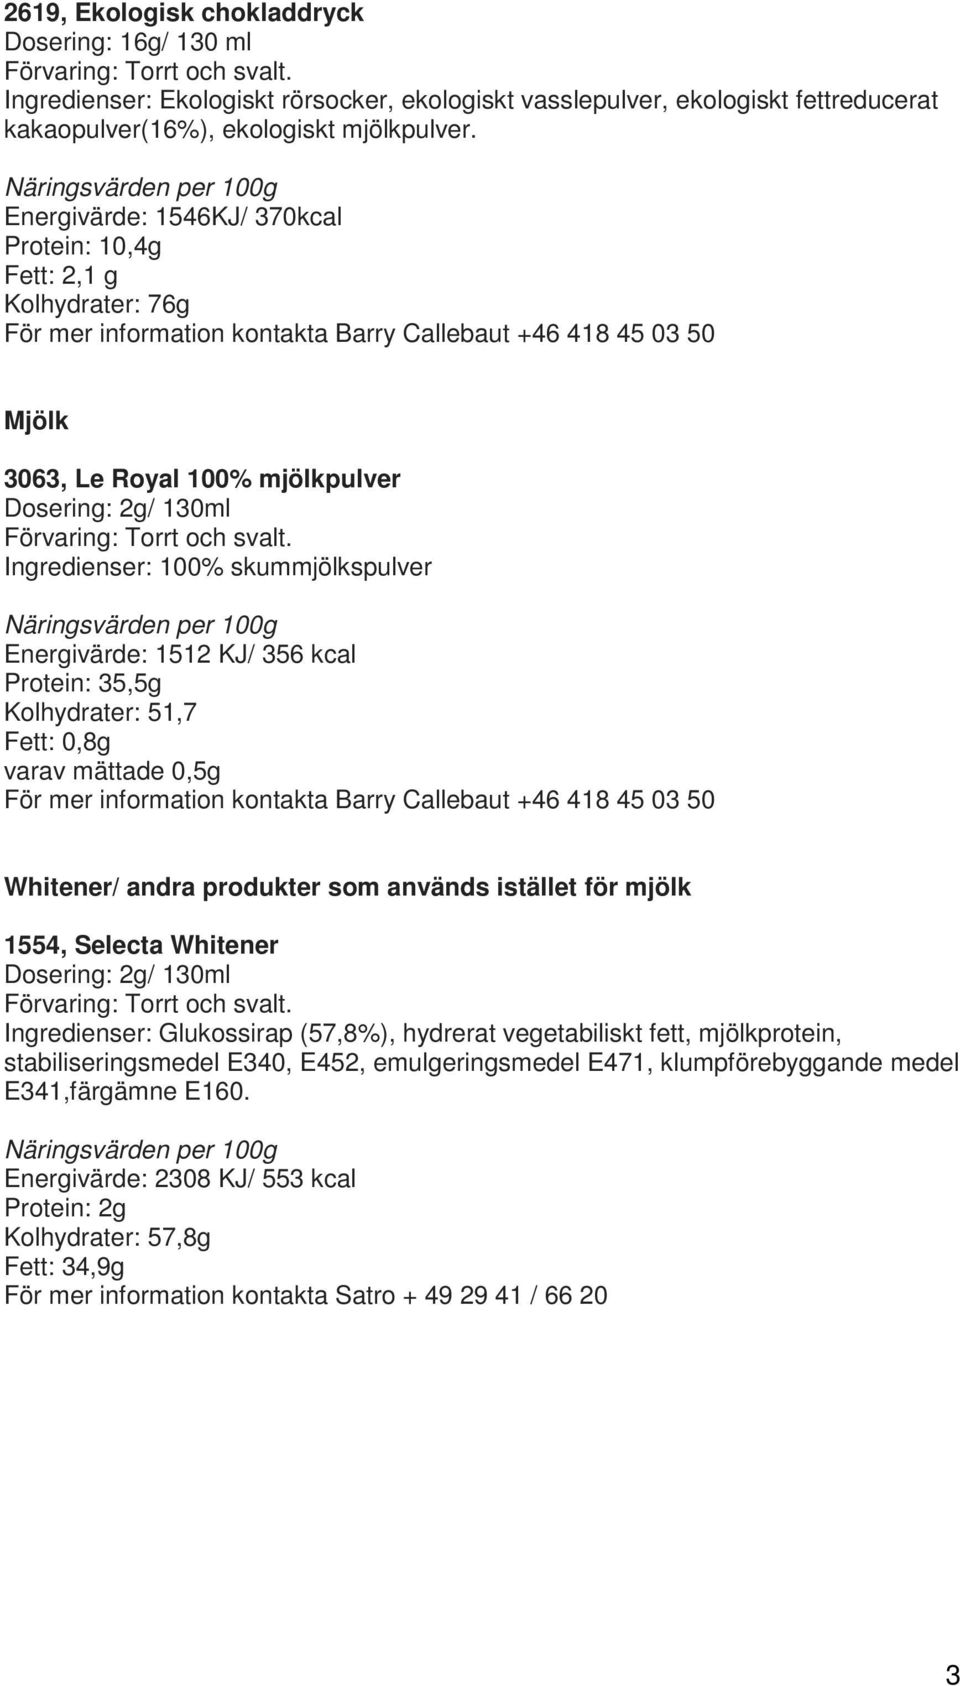 Protein: 35,5g Kolhydrater: 51,7 Fett: 0,8g varav mättade 0,5g Whitener/ andra produkter som används istället för mjölk 1554, Selecta Whitener Ingredienser: Glukossirap (57,8%),